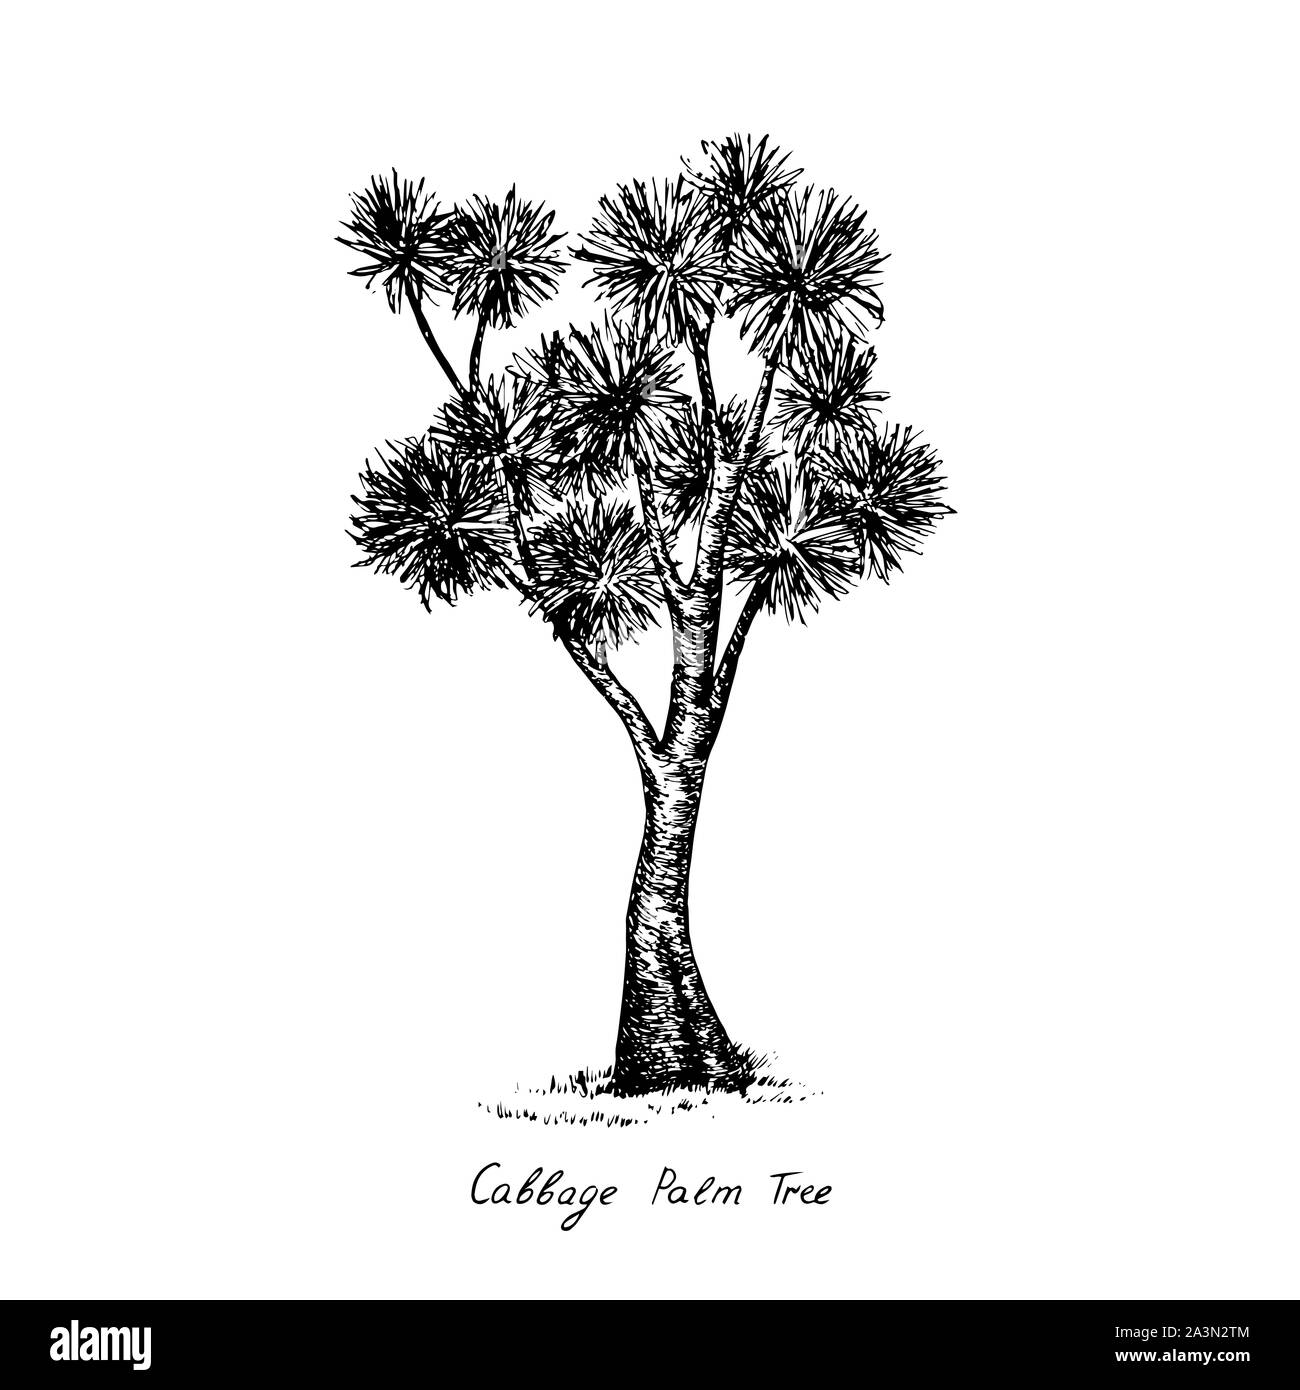 Cordyline australis (Cabbage Tree, Kohl - Palm) Baum Silhouette, Hand gezeichnet Tiefdruck Stil, Skizze Abbildung mit Beschriftung Stockfoto